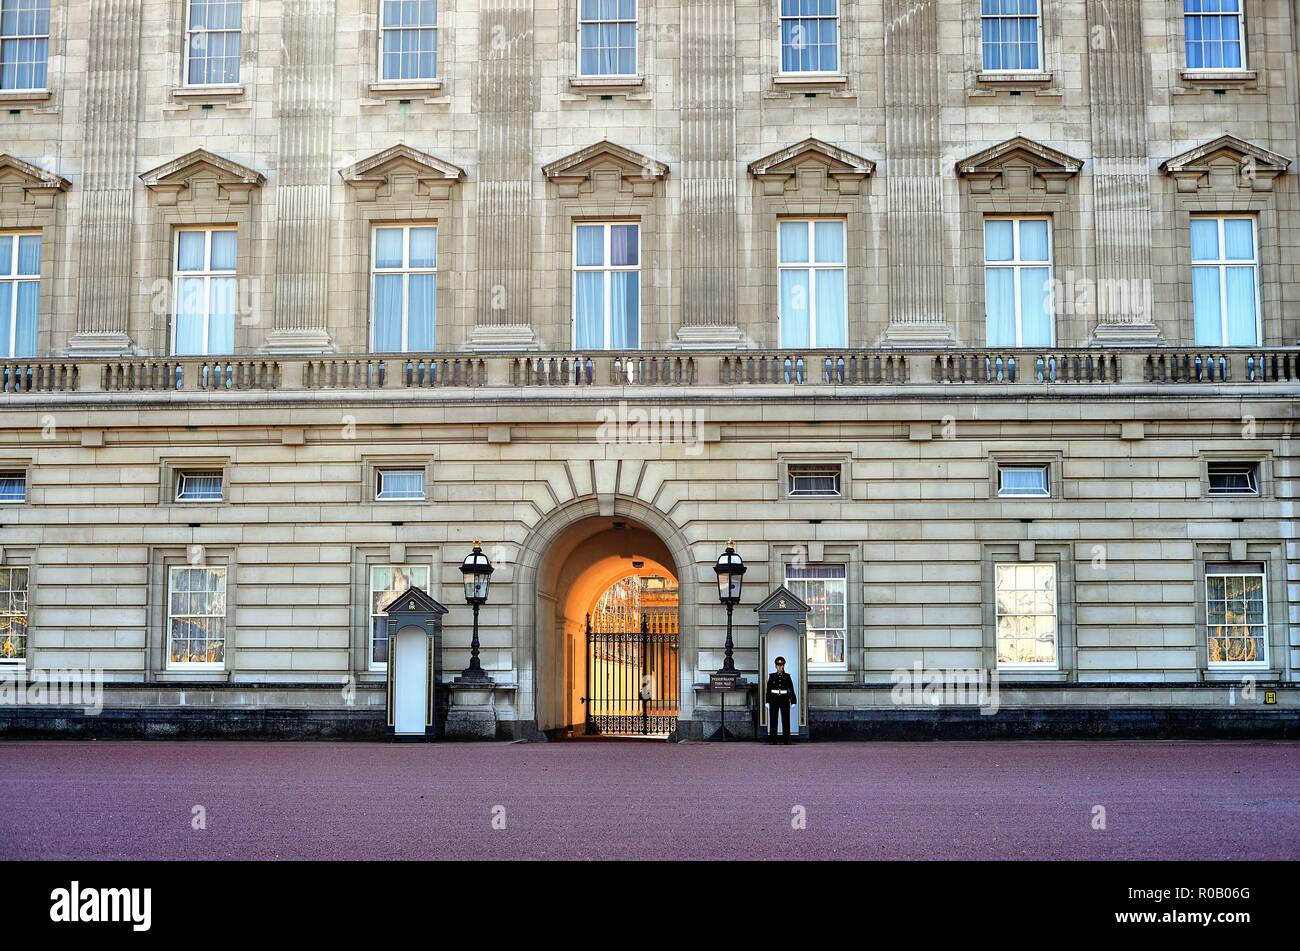 Londra, Inghilterra, Regno Unito. Un palazzo guardia a Buckingham Palace, la famosa residenza della regina d'Inghilterra. Foto Stock